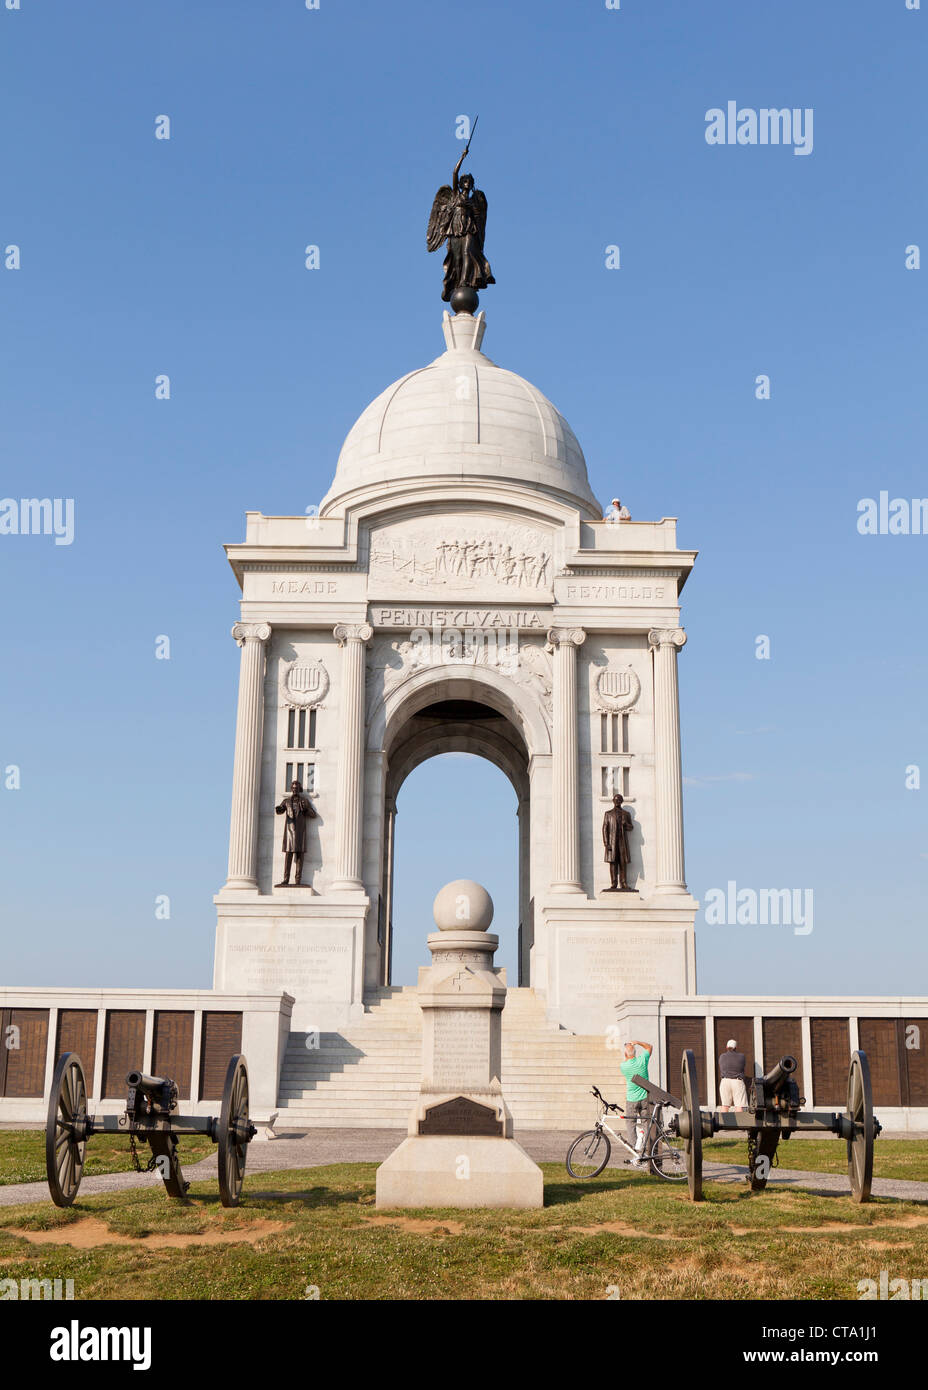 Pennsylvania monument - Gettysburg, Pennsylvania USA Stock Photo